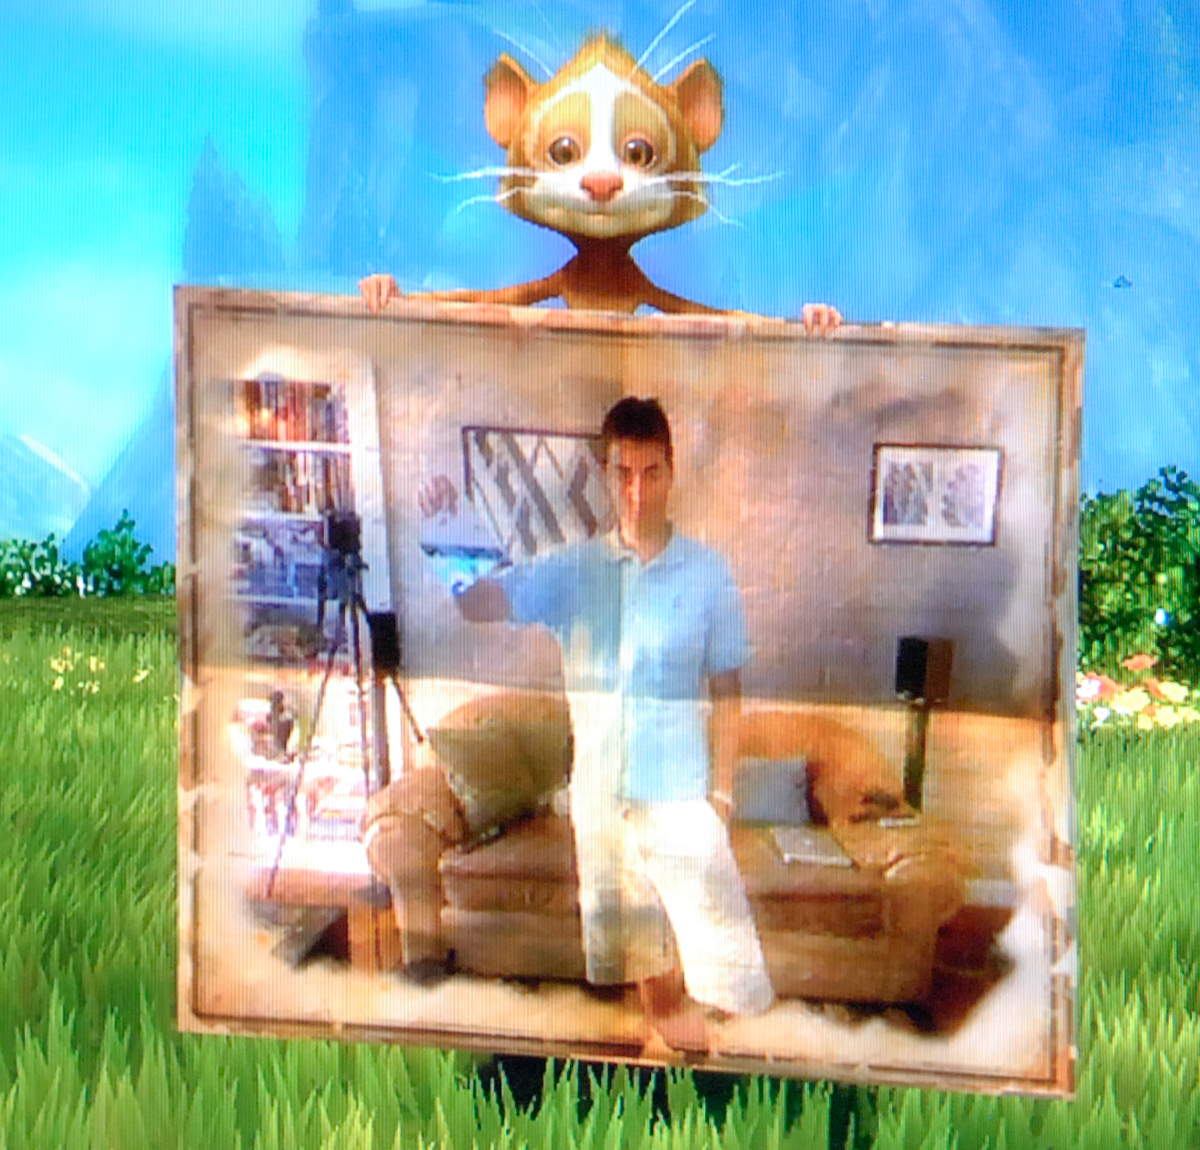 Microsoft lança cinco novos Kinectimals de pelúcia